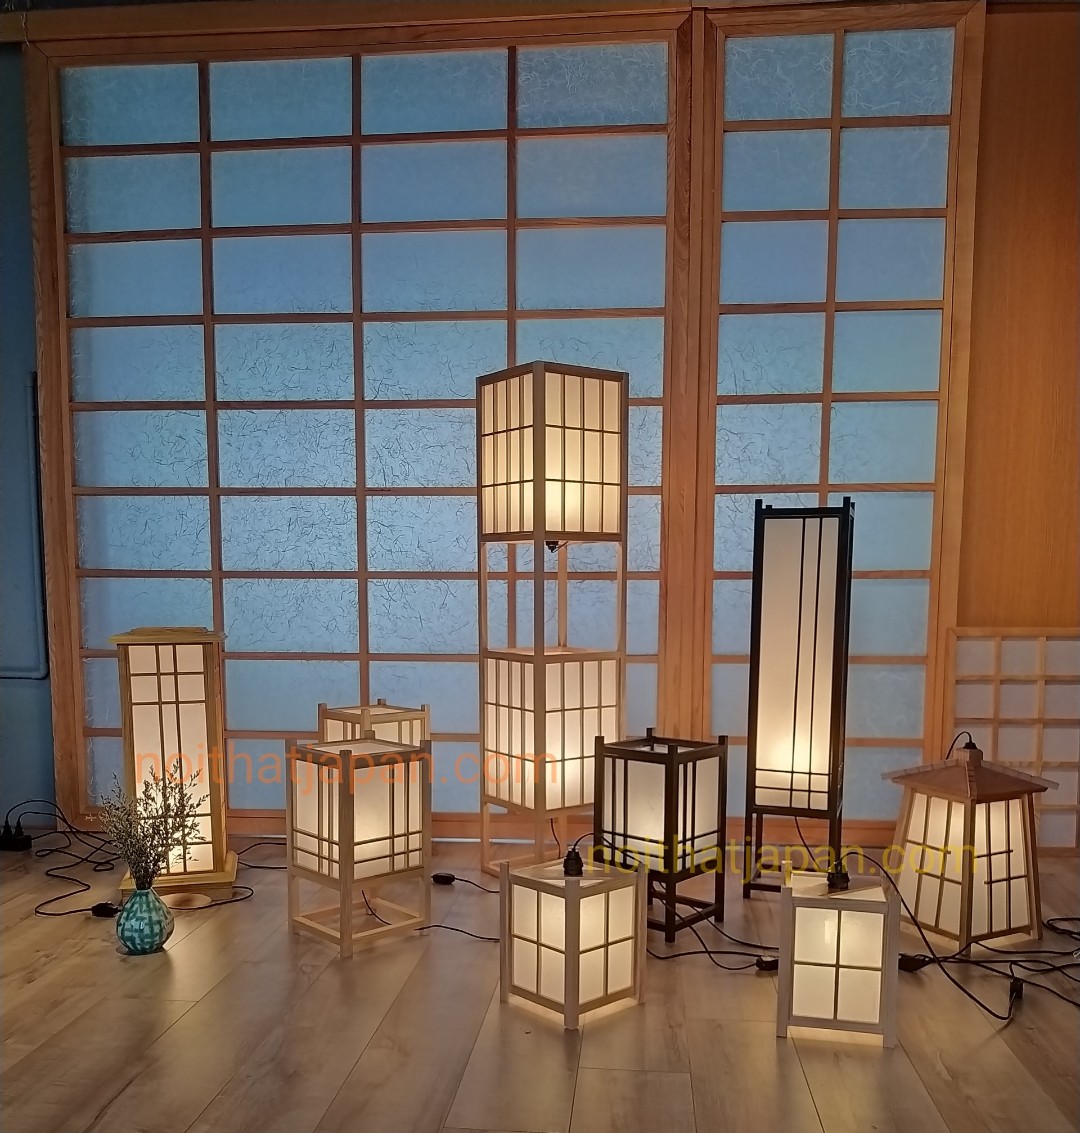 Đèn gỗ thả trần, đèn thả bàn ăn gỗ tự nhiên, đèn decor phòng thiền, phòng trà đạo phong cách truyền thống Nhật Bản, chất liệu gỗ thông và Shoji nhập khẩu Nhật Bản, kích thước 18*18*24cm, gồm bóng lesd ánh sáng vàng